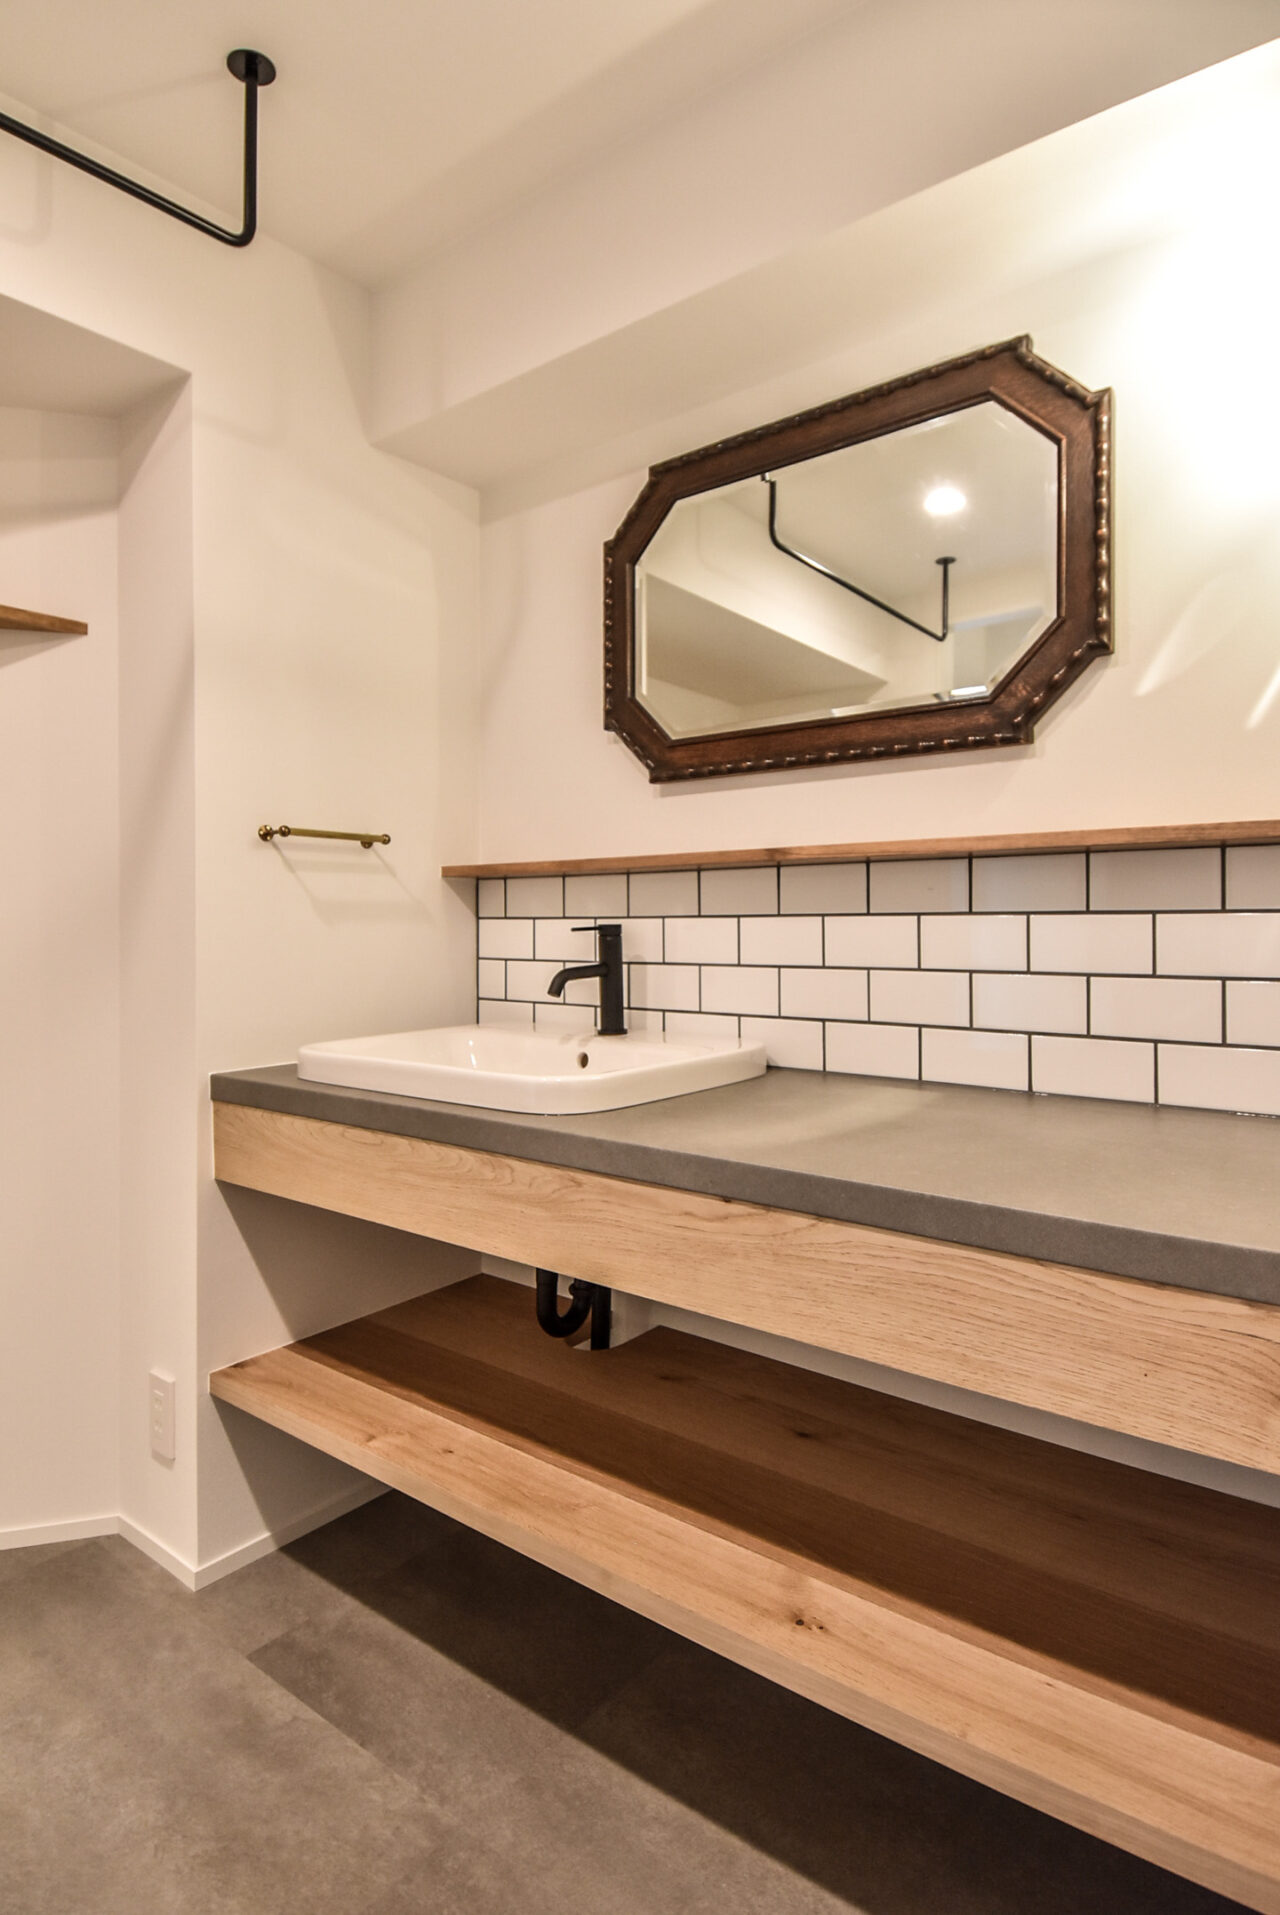 白い壁とヘキサゴンミラー、下部に木製シェルフがあるモダンな洗面スペース